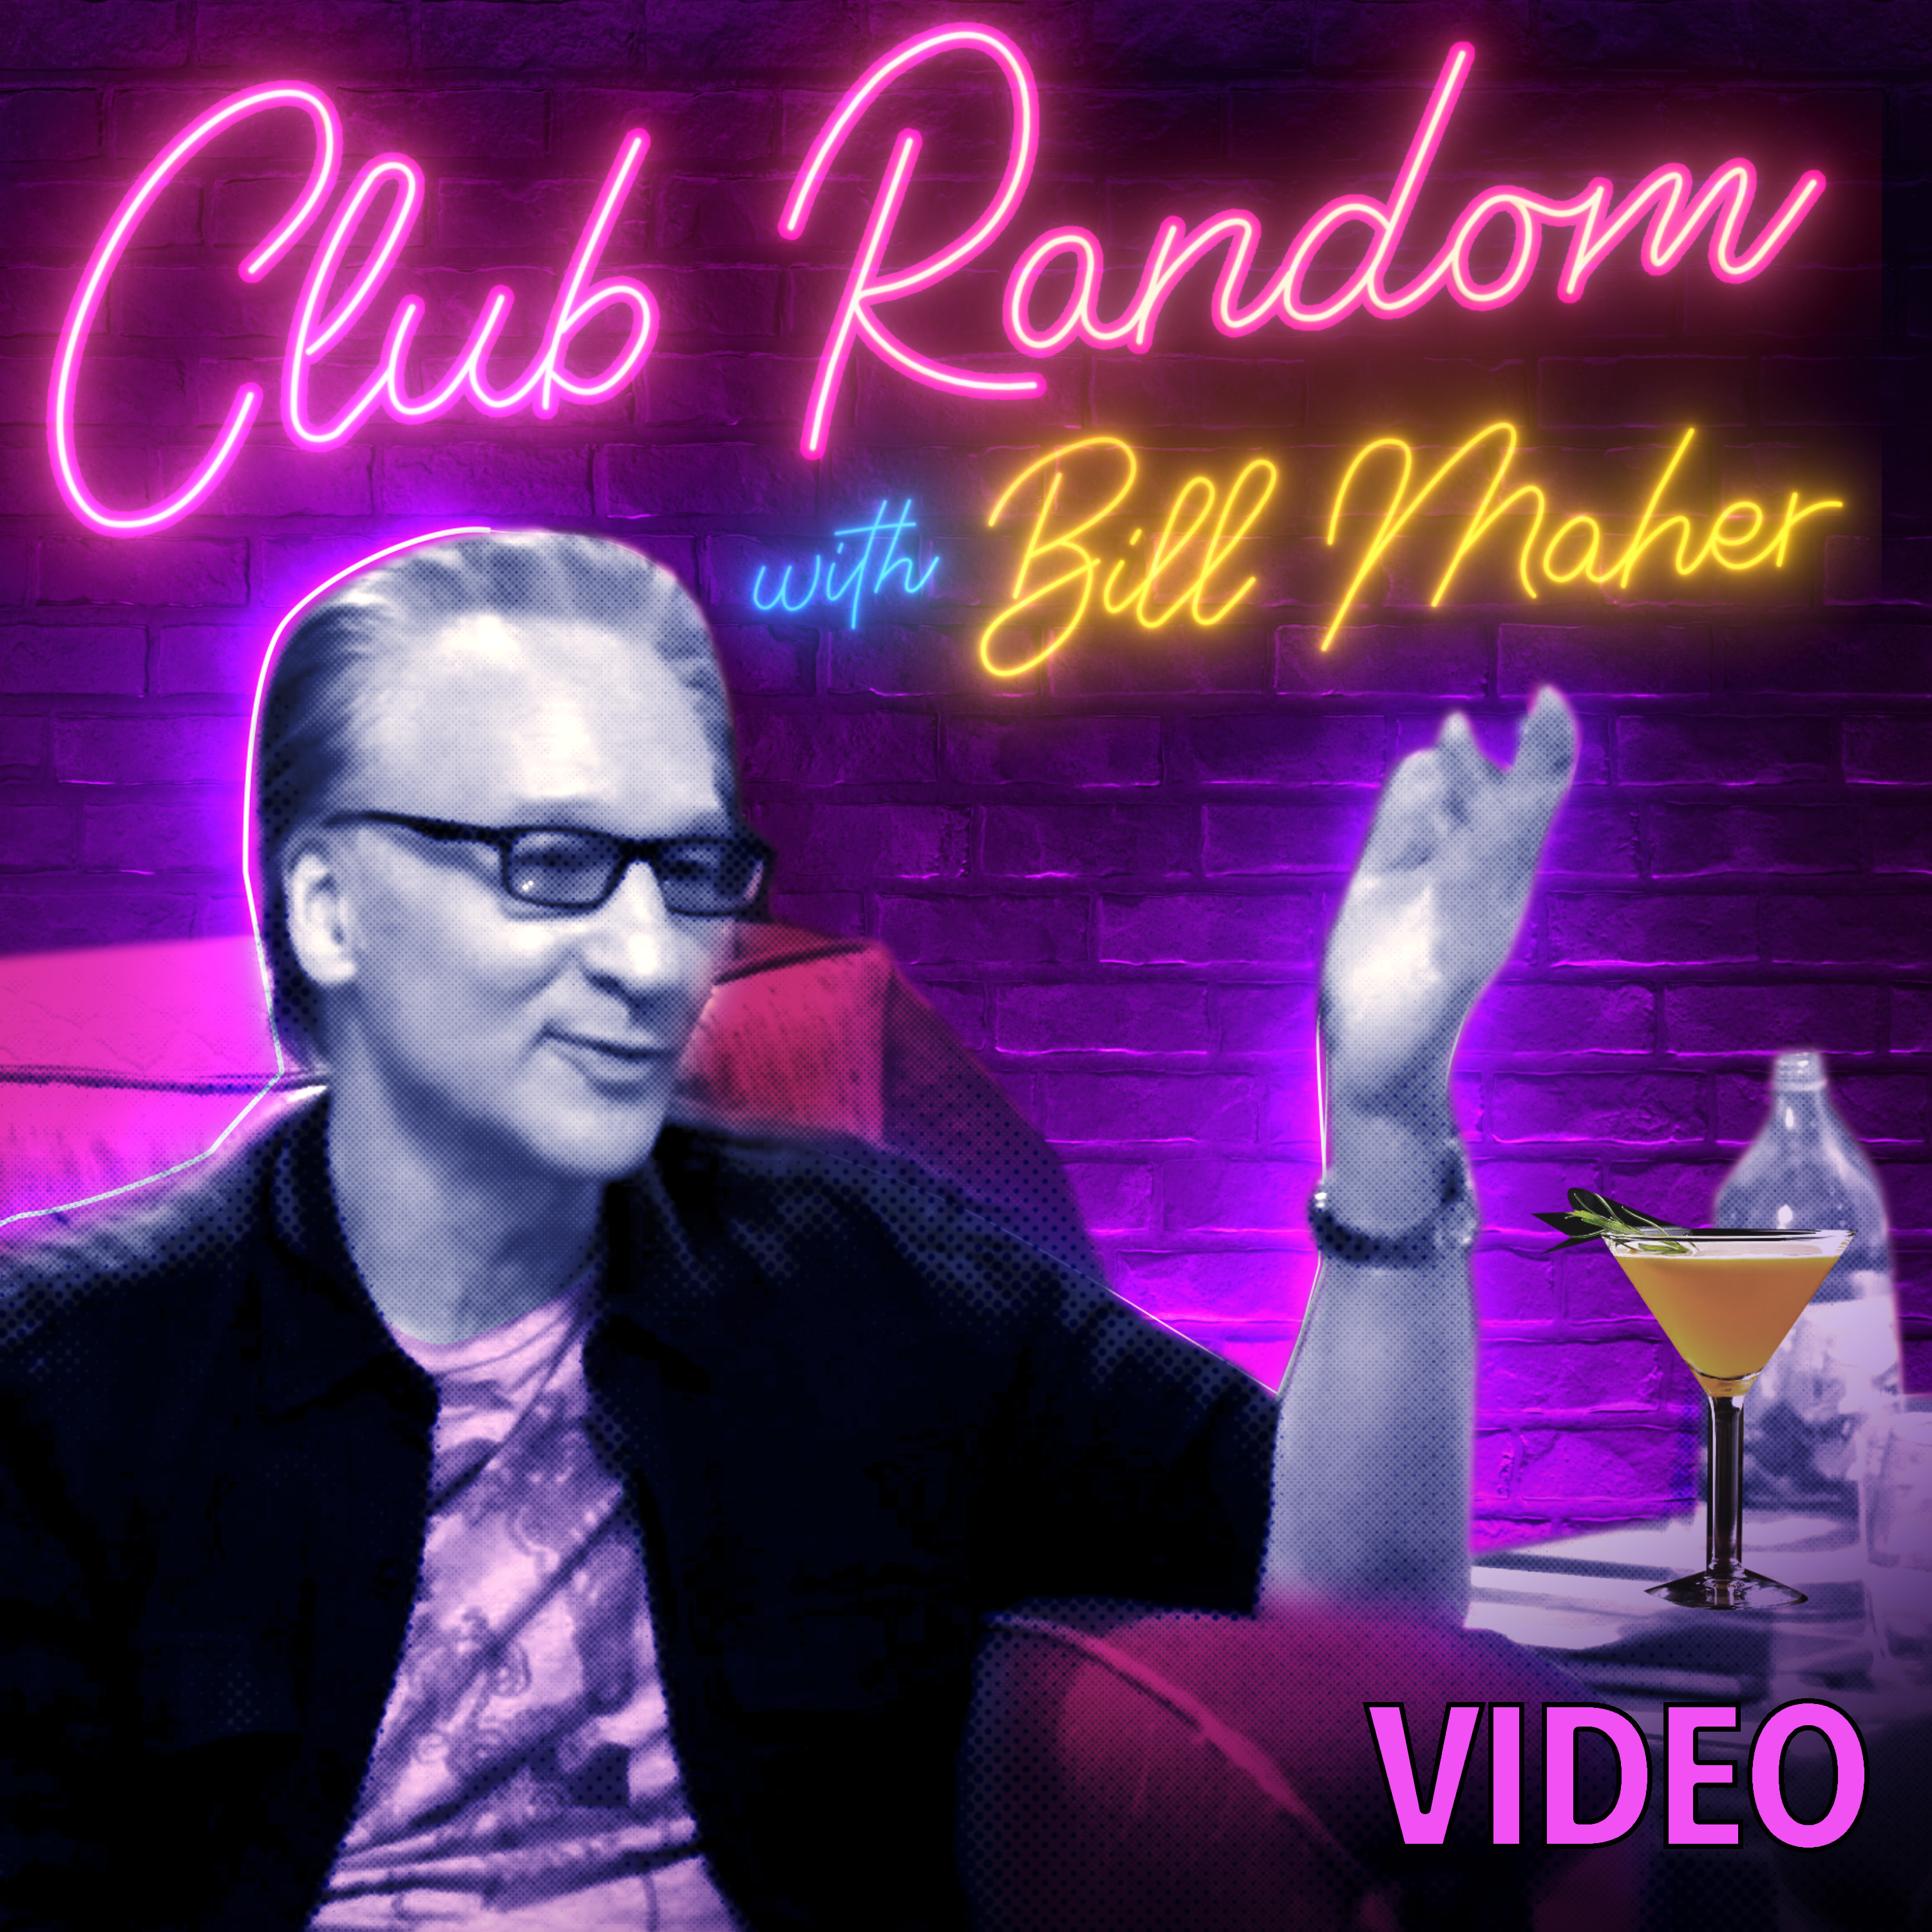 Video: Wiz Khalifa | Club Random with Bill Maher